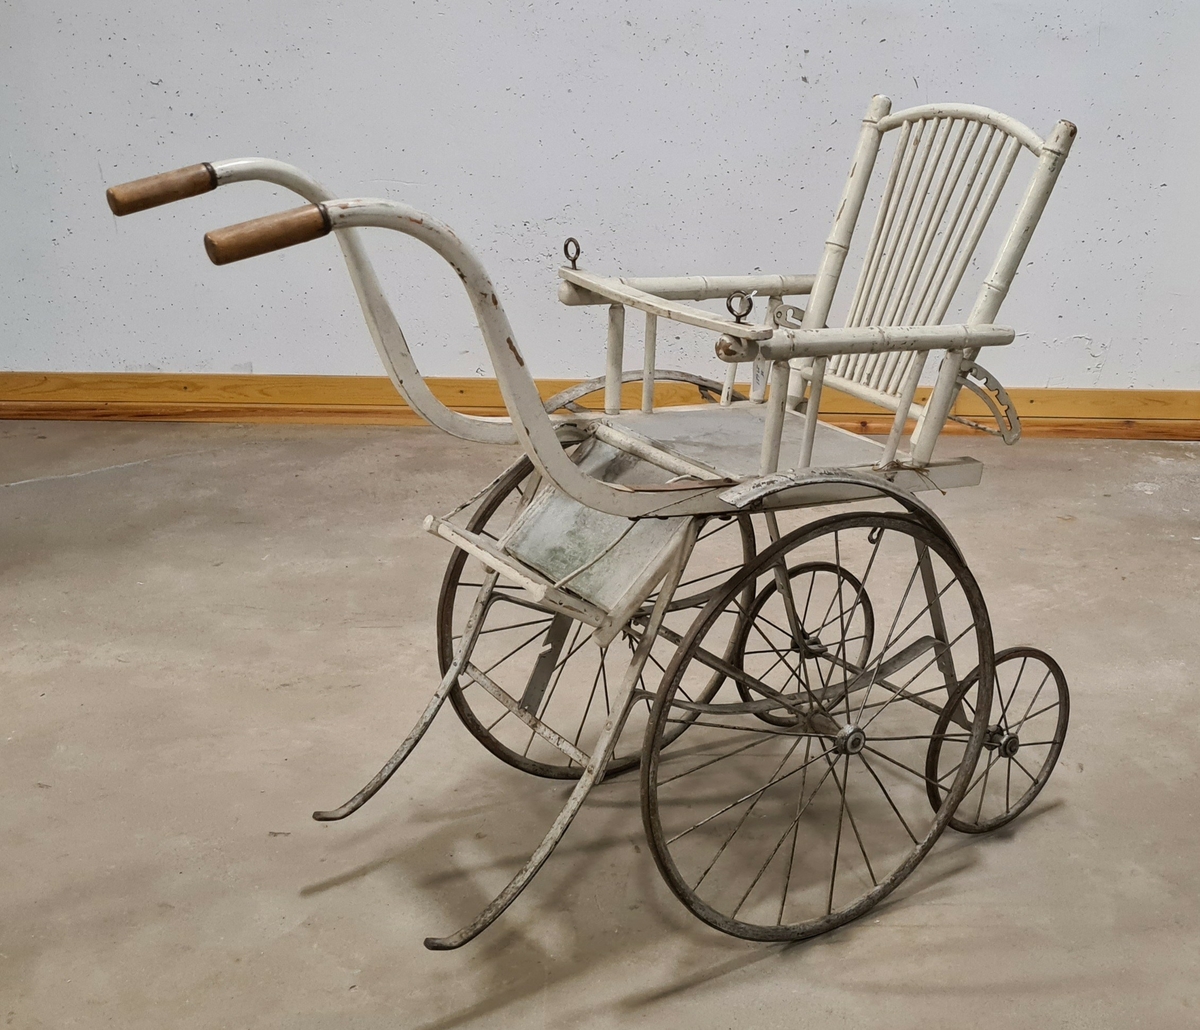 Barnvagn, sittvagn, sittkärra i trä. Kärran har två handtag. Större hjul fram och mindre hjul baktill. Ryggen är reglerbar.